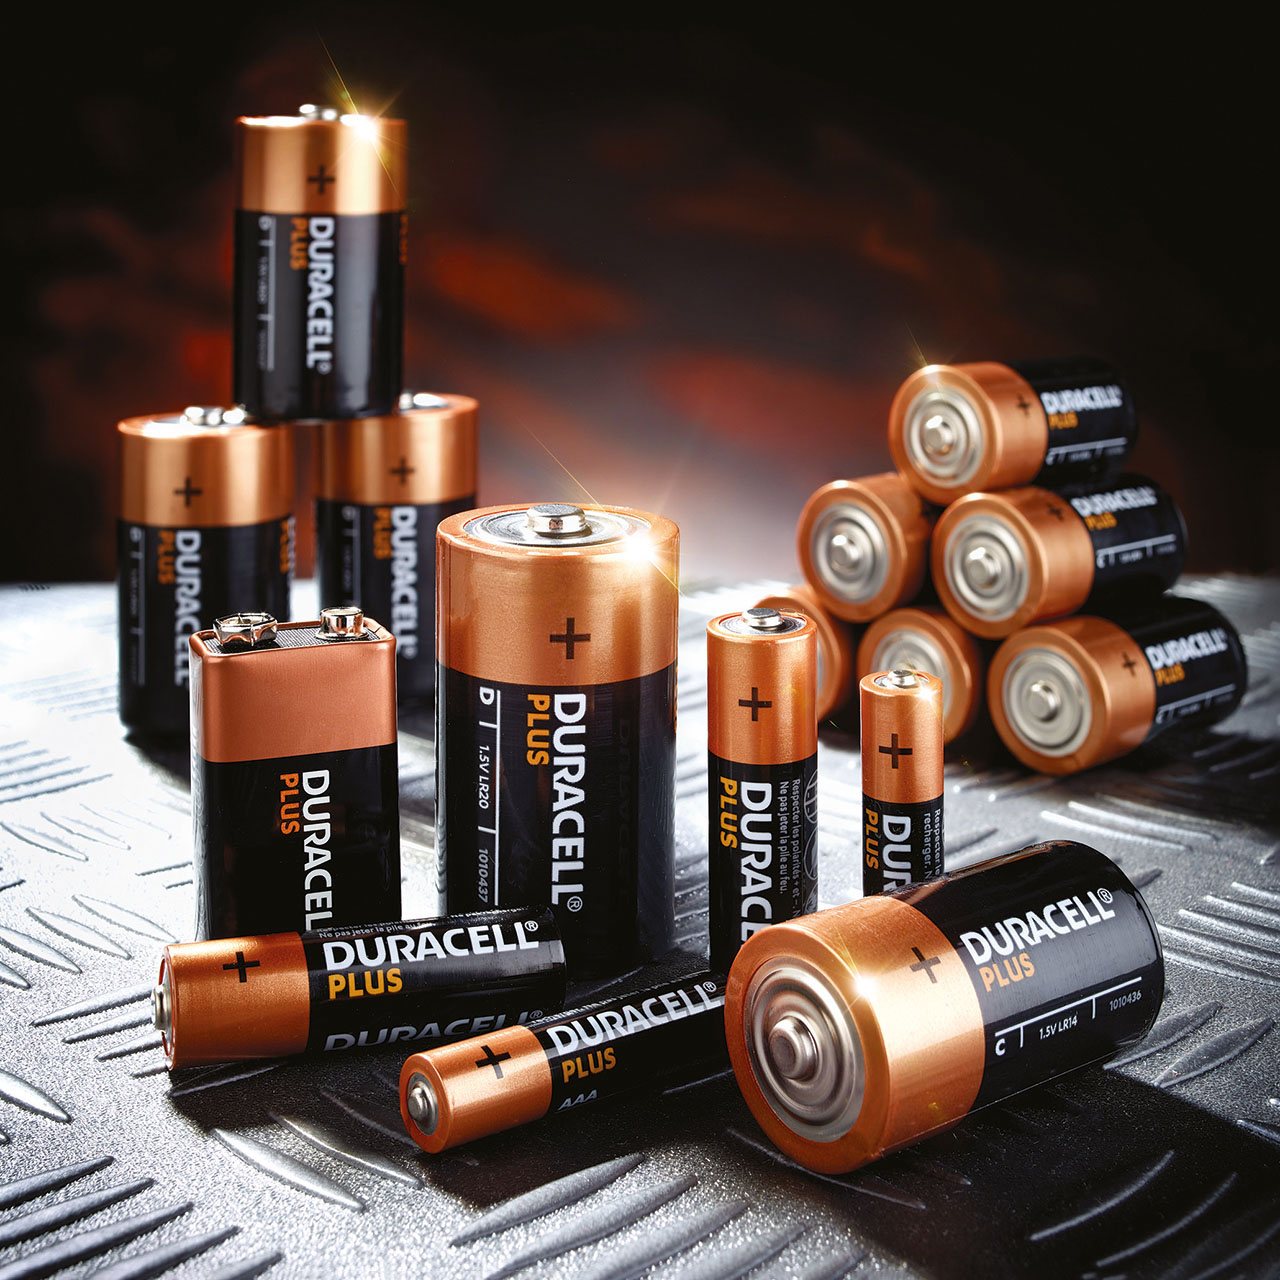 Duracell Plus Power 9v Batteries